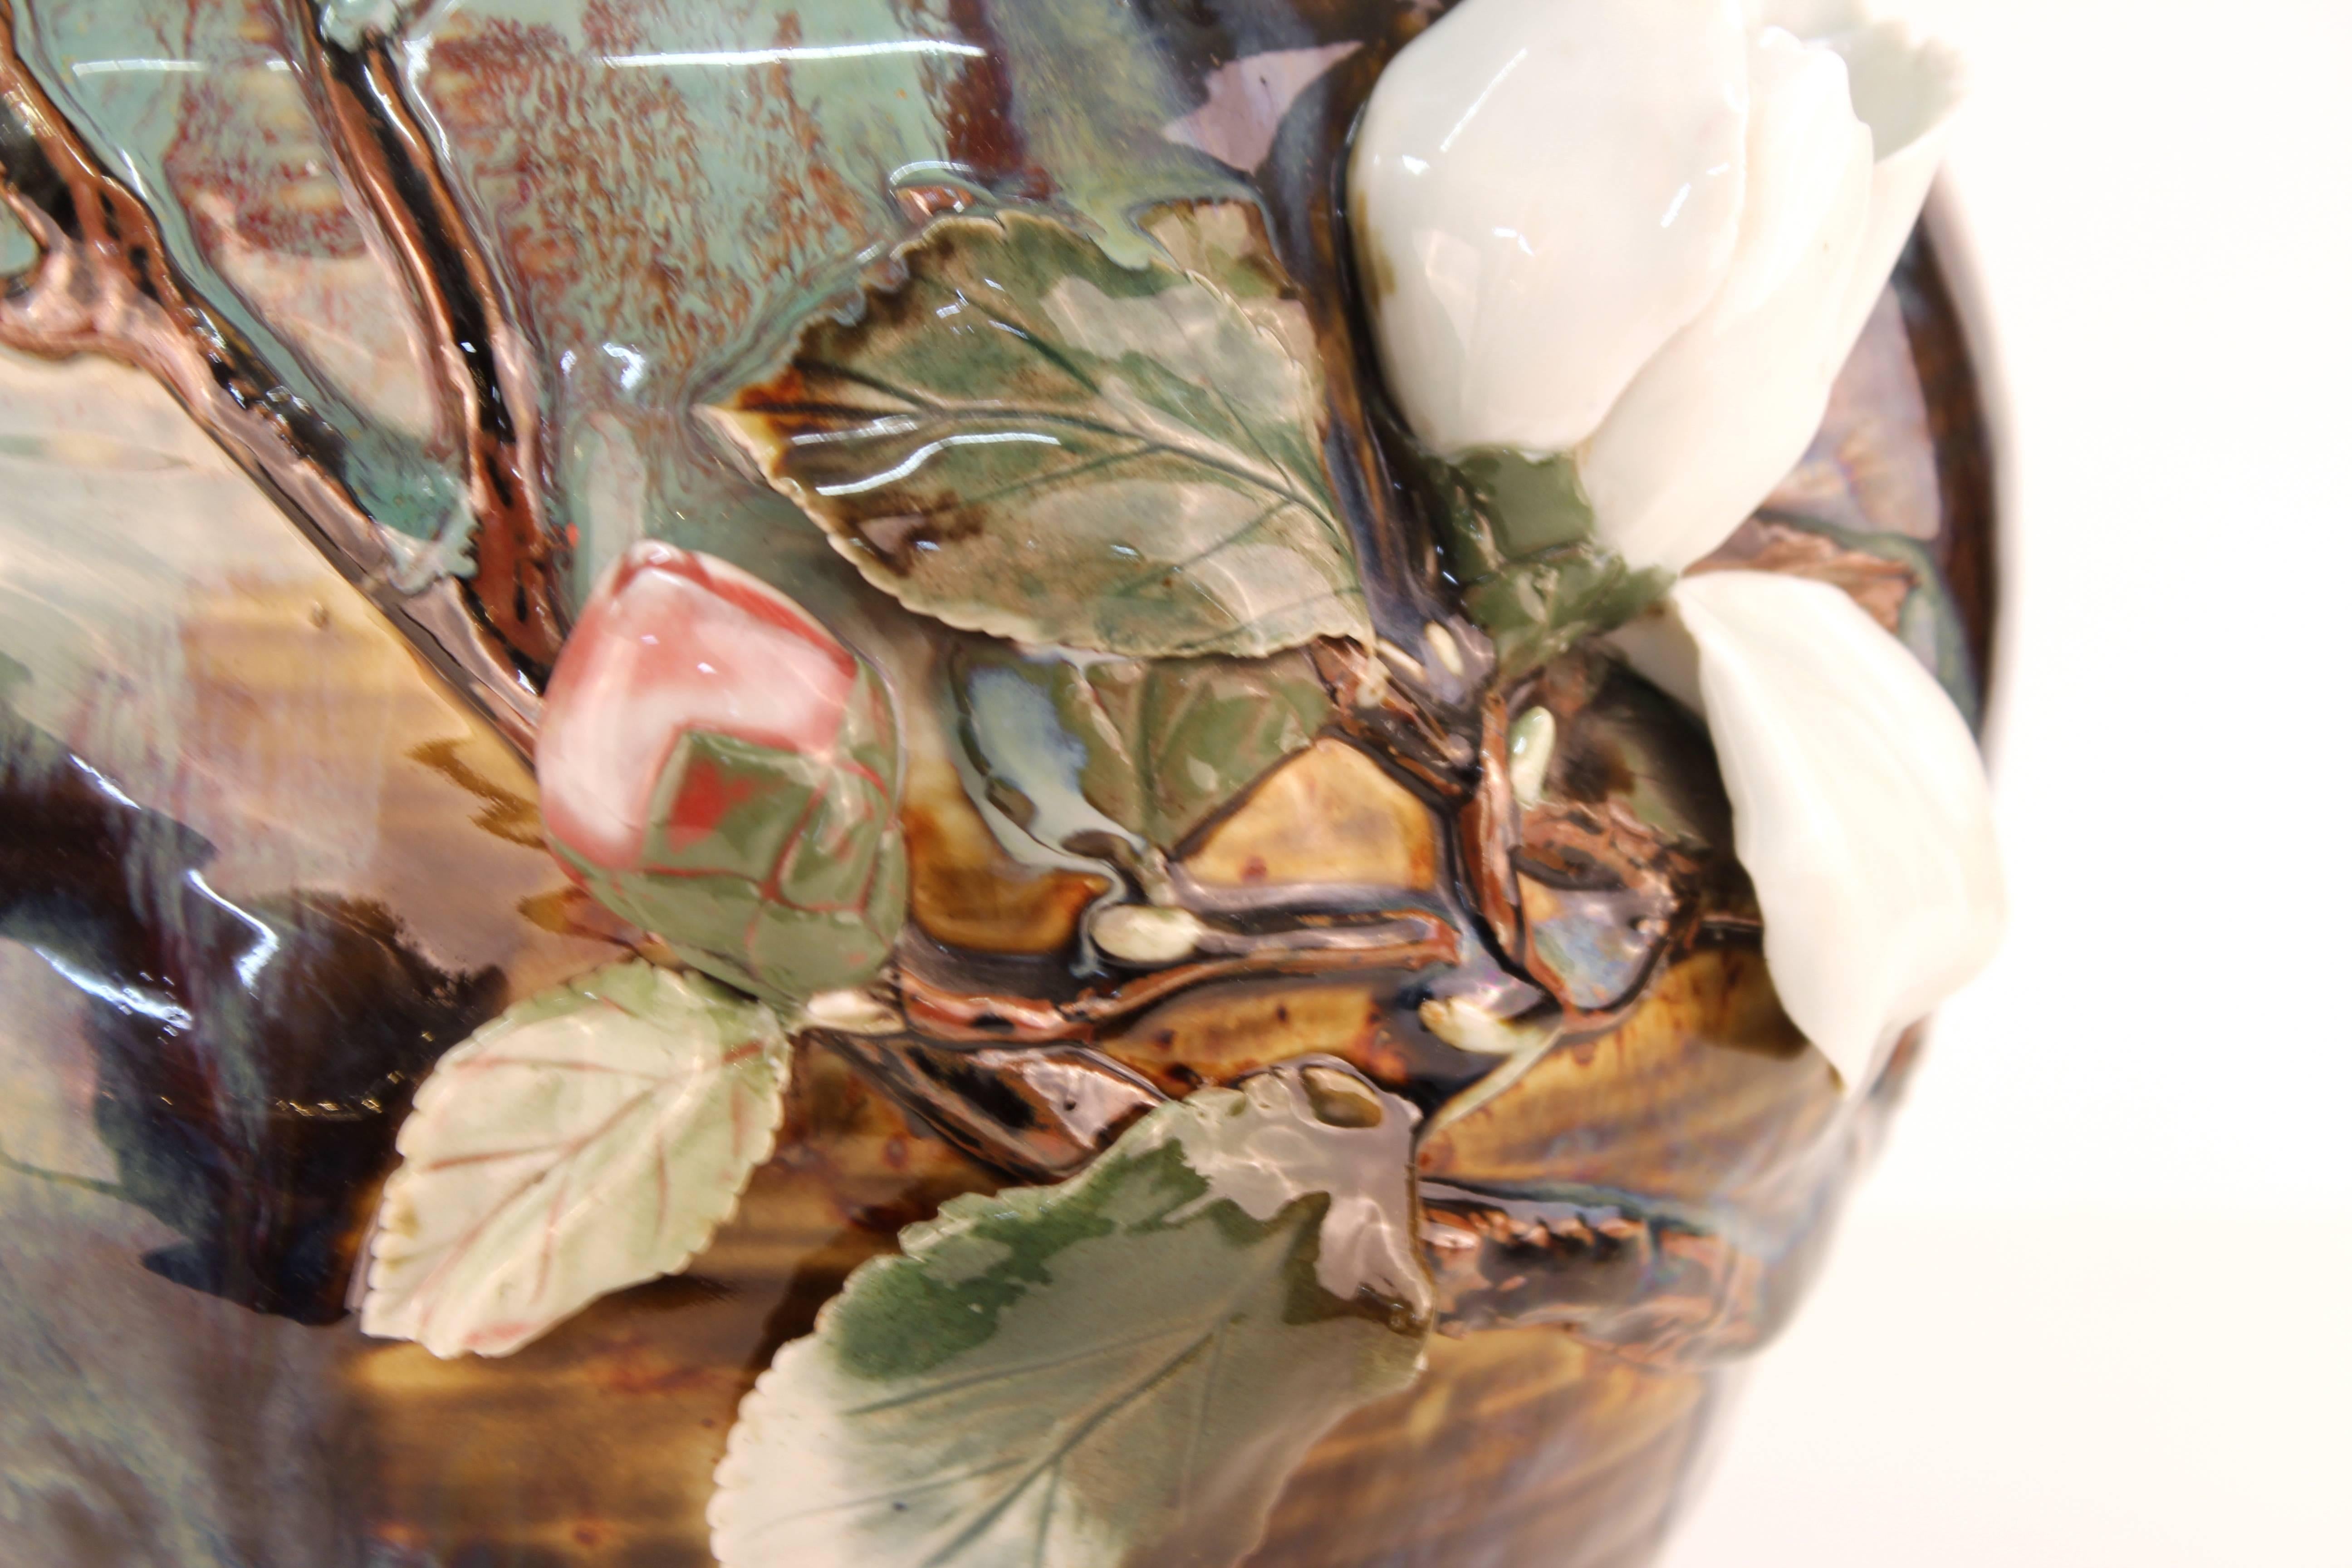 20th Century Japanese Glazed Ceramic Vase with Raised Flowers